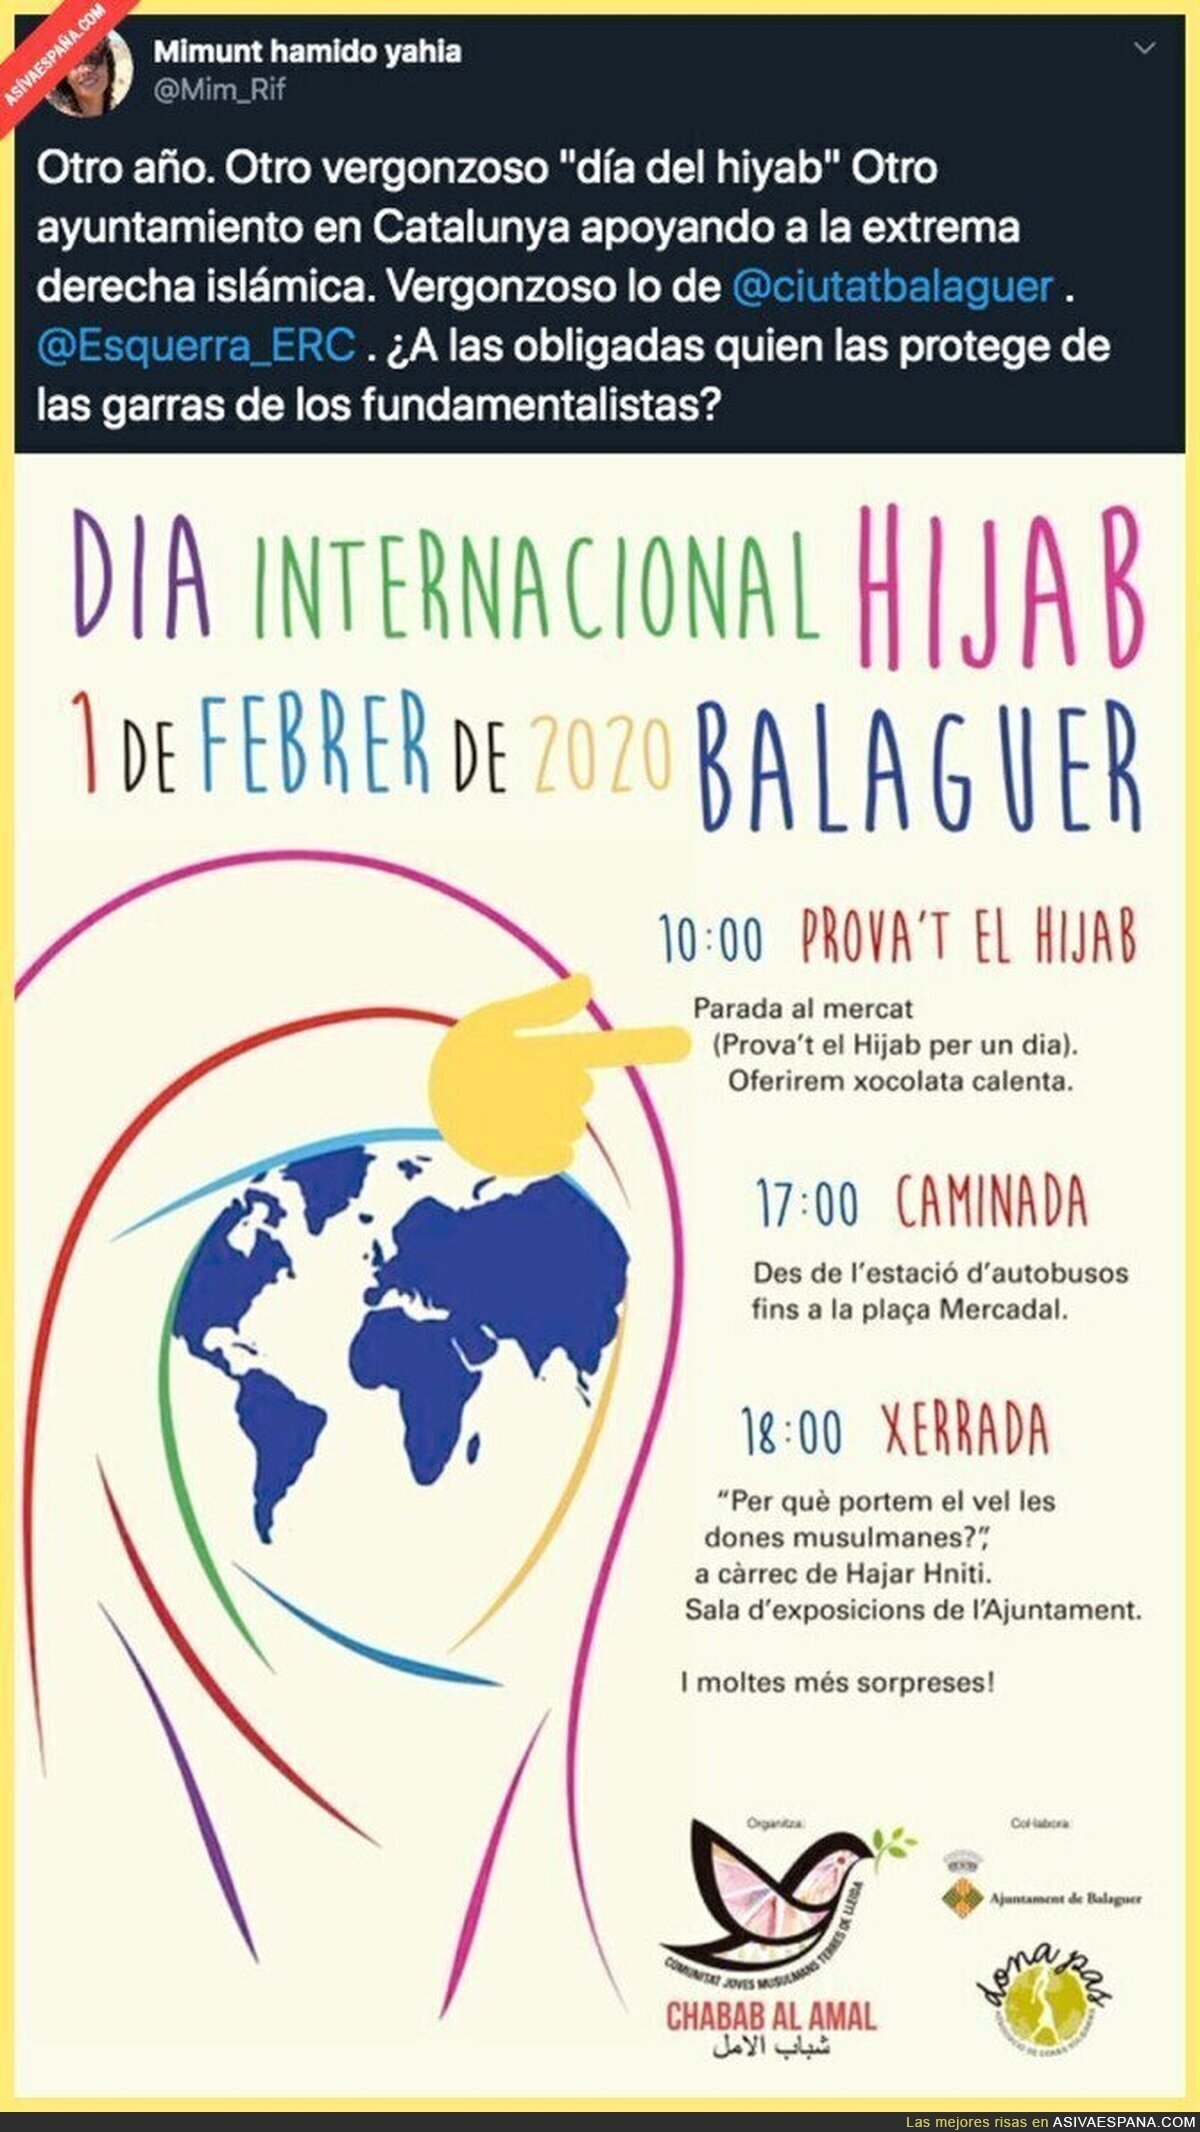 Las actividades por el Día Internacional del Hiyab